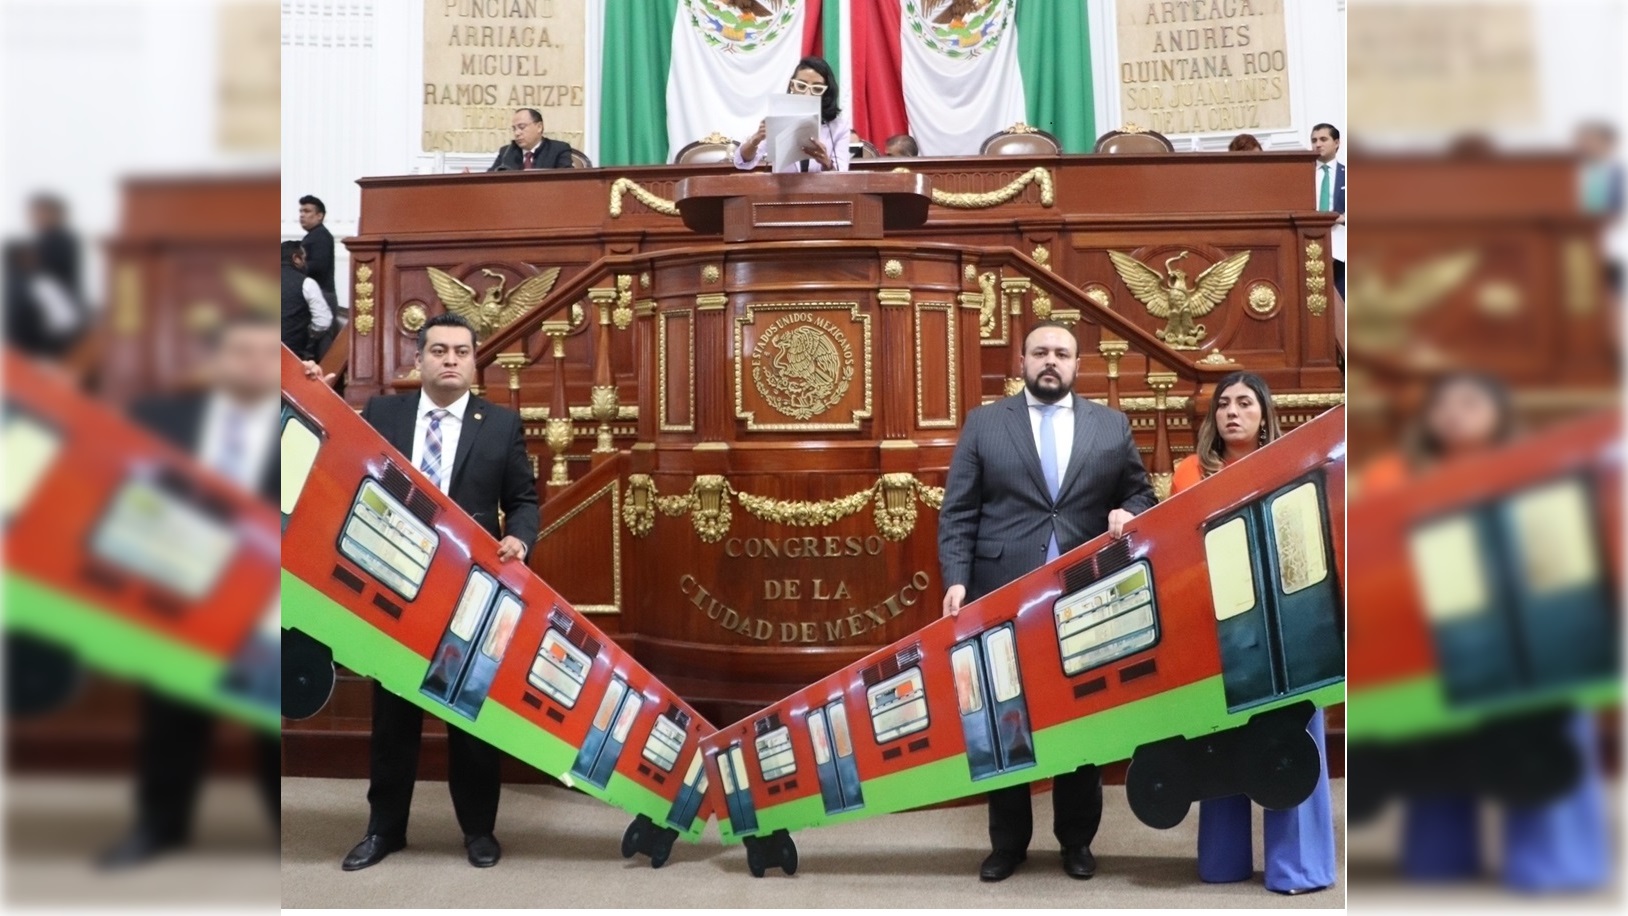 Los grupos parlamentarios de Morena y el PAN en el Congreso de la Ciudad de México tuvieron una fuerte confrontación este miércoles durante la sesión de la Comisión Permanente.